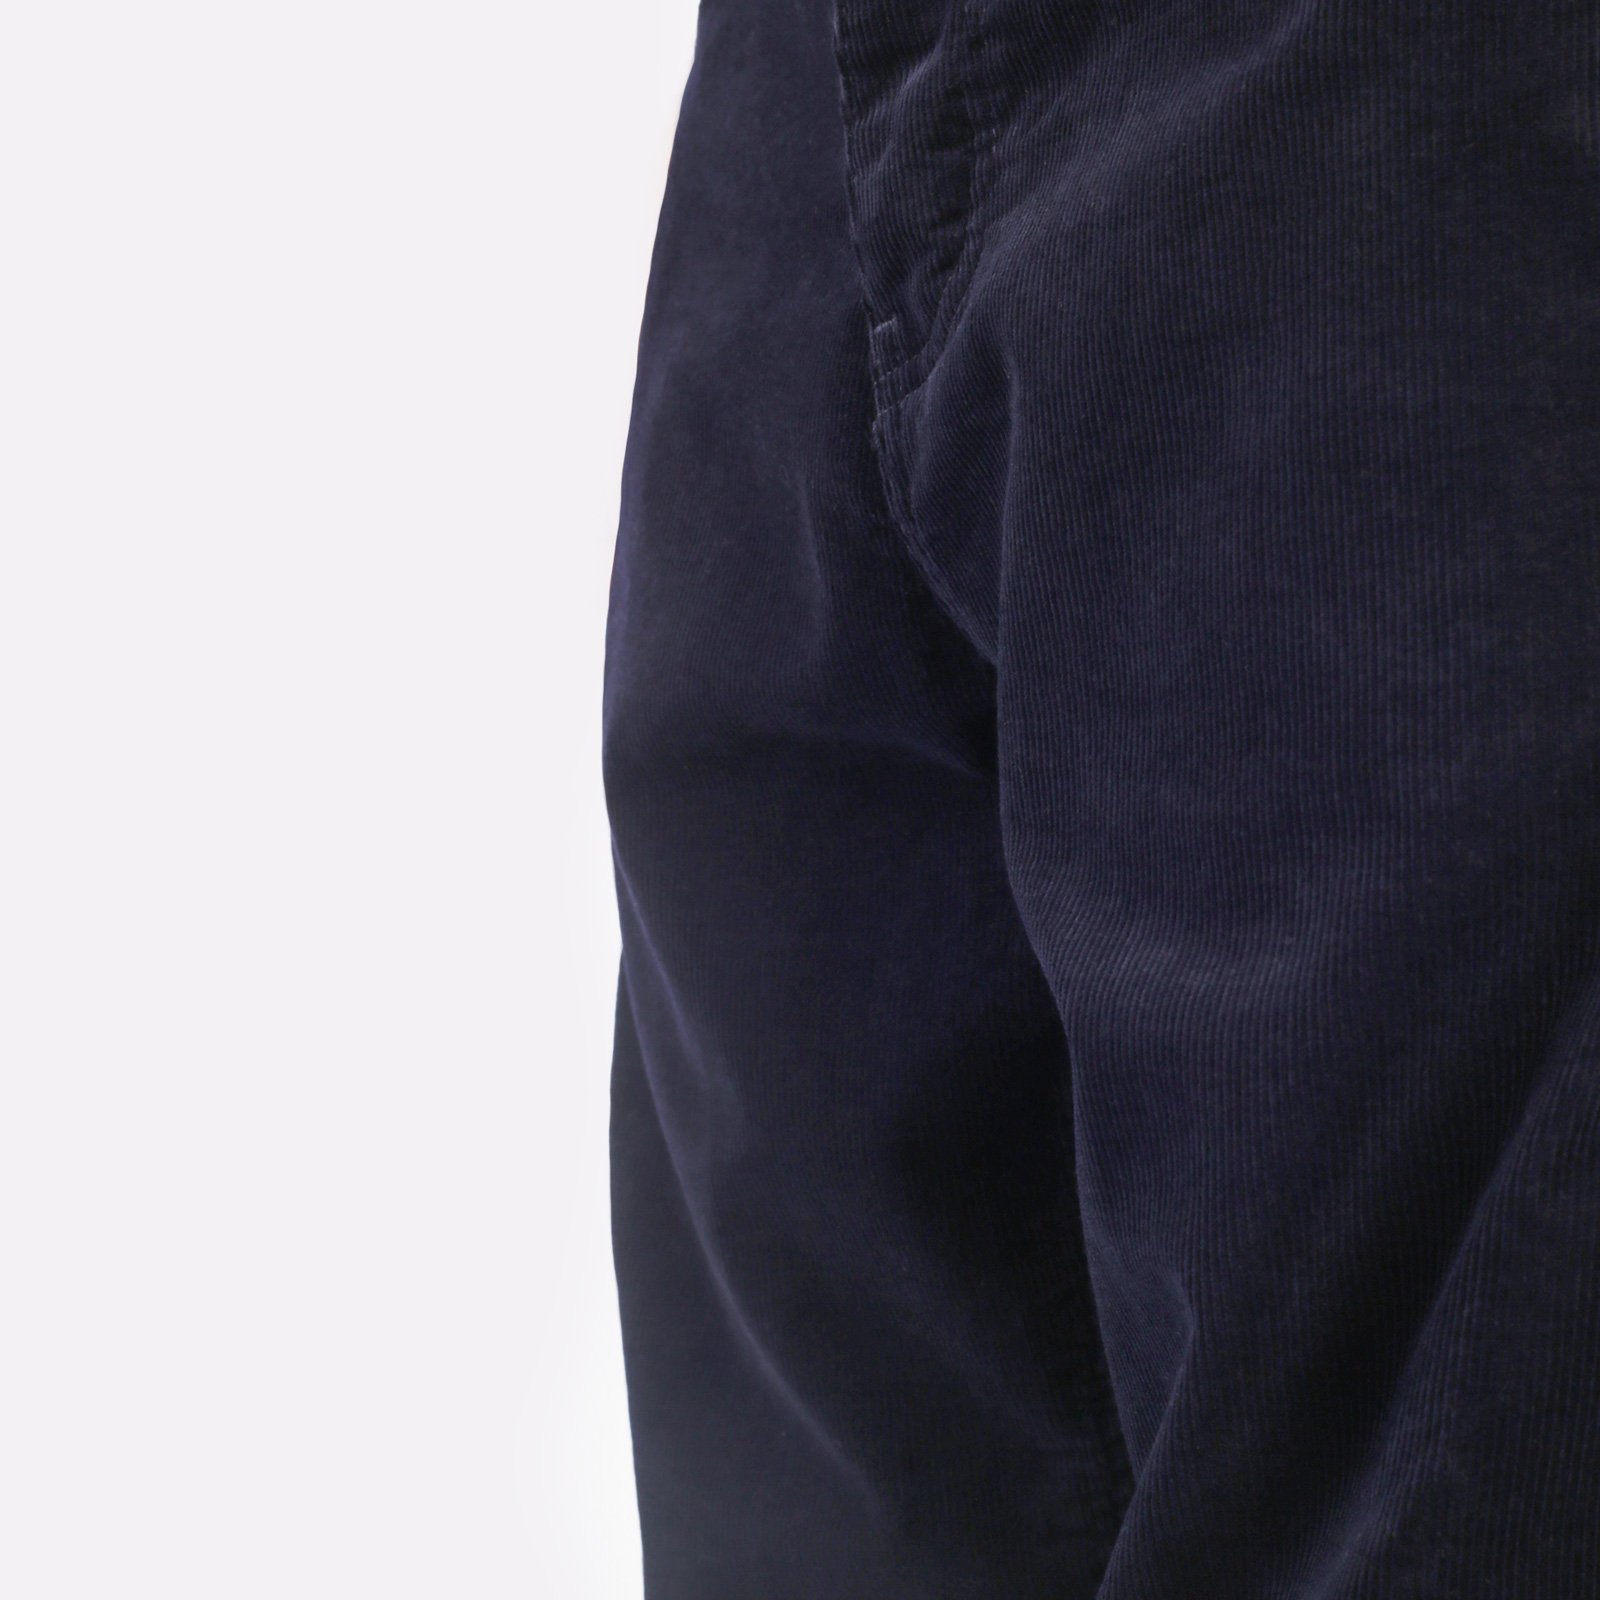 мужские синие брюки Carhartt WIP Newel Pant I031456-dark_navy - цена, описание, фото 5